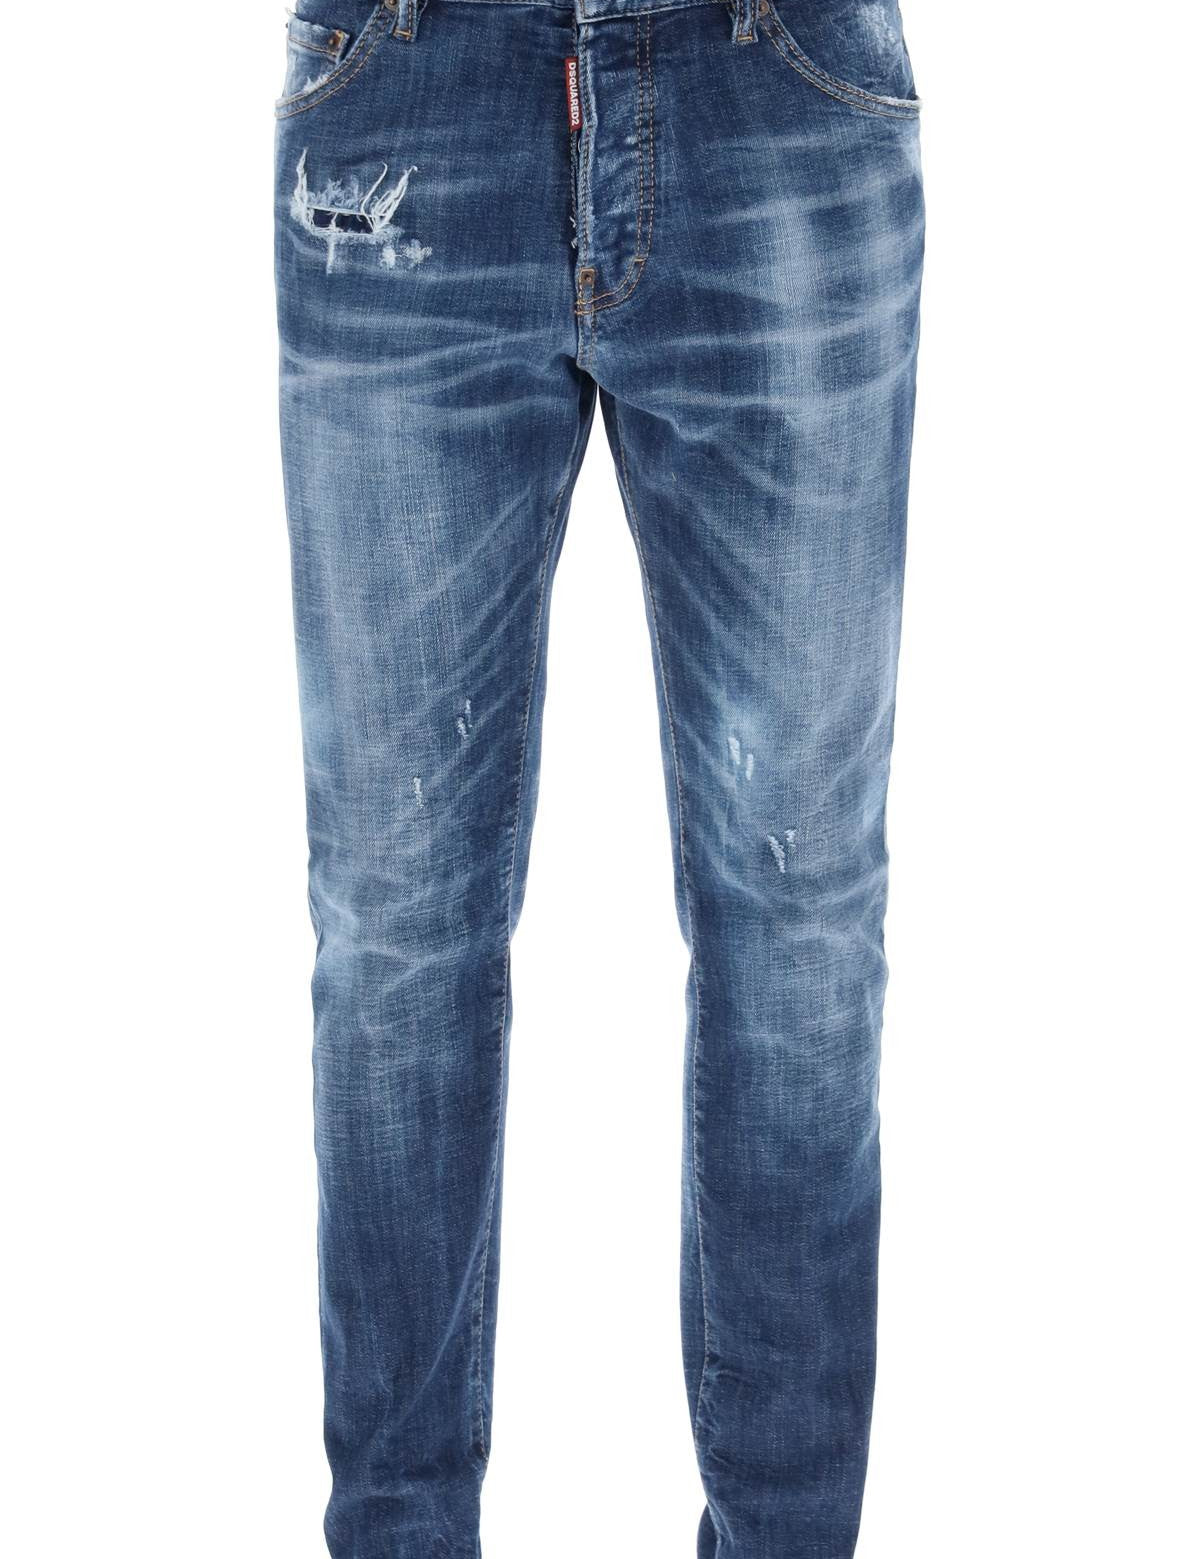 dsquared2-jeans-cool-guy-in-dark-70-s-wash.jpg